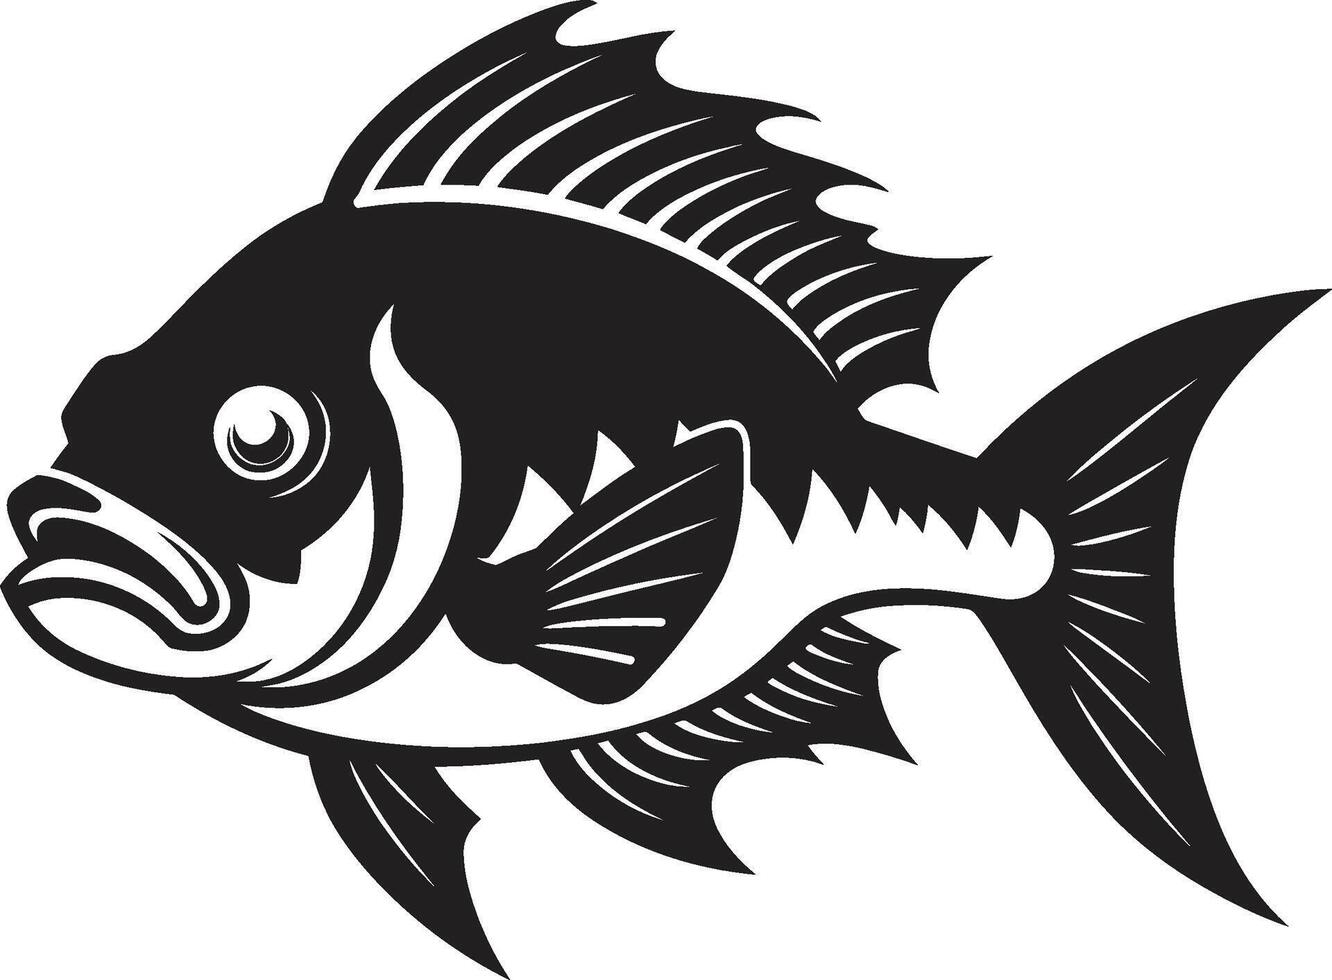 räuberisch Macht kompliziert schwarz Symbol Illustration zum modern branding heftig Wasser Tier Emblem minimalistisch Logo im noir schwarz vektor